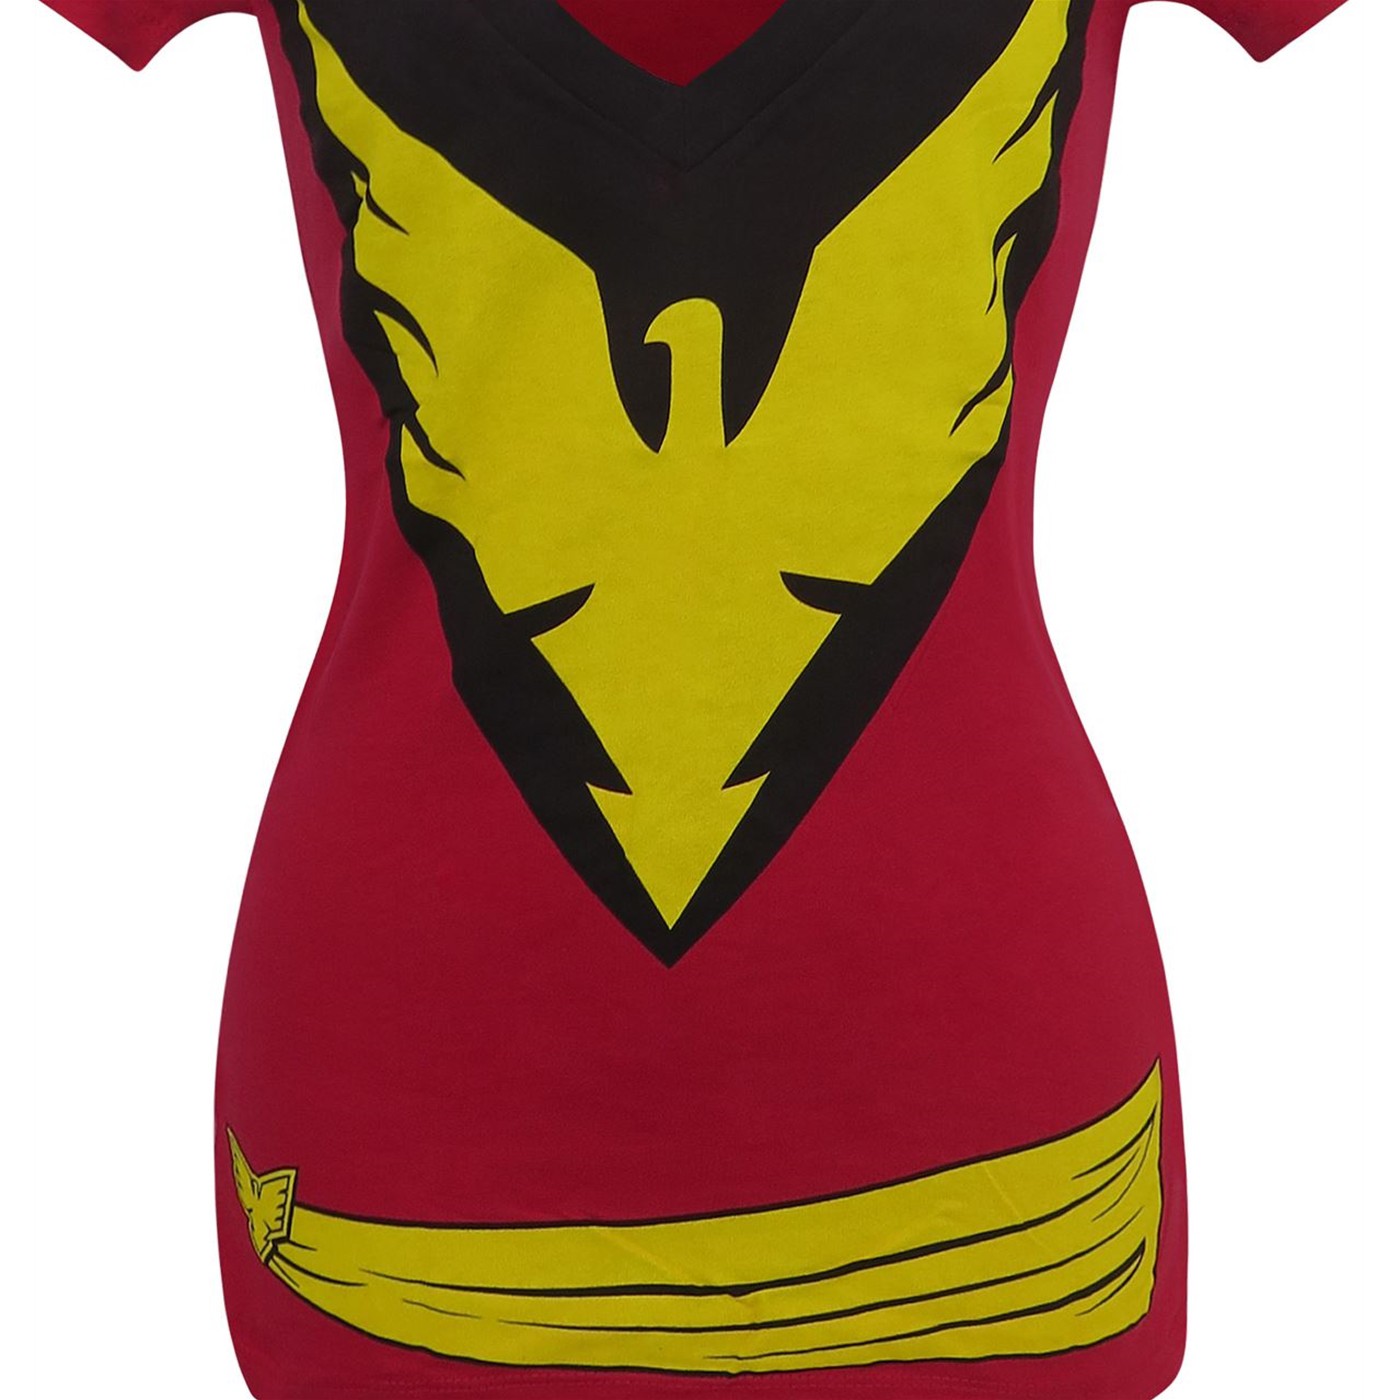 Dark Phoenix Women's Costume T-Shirt